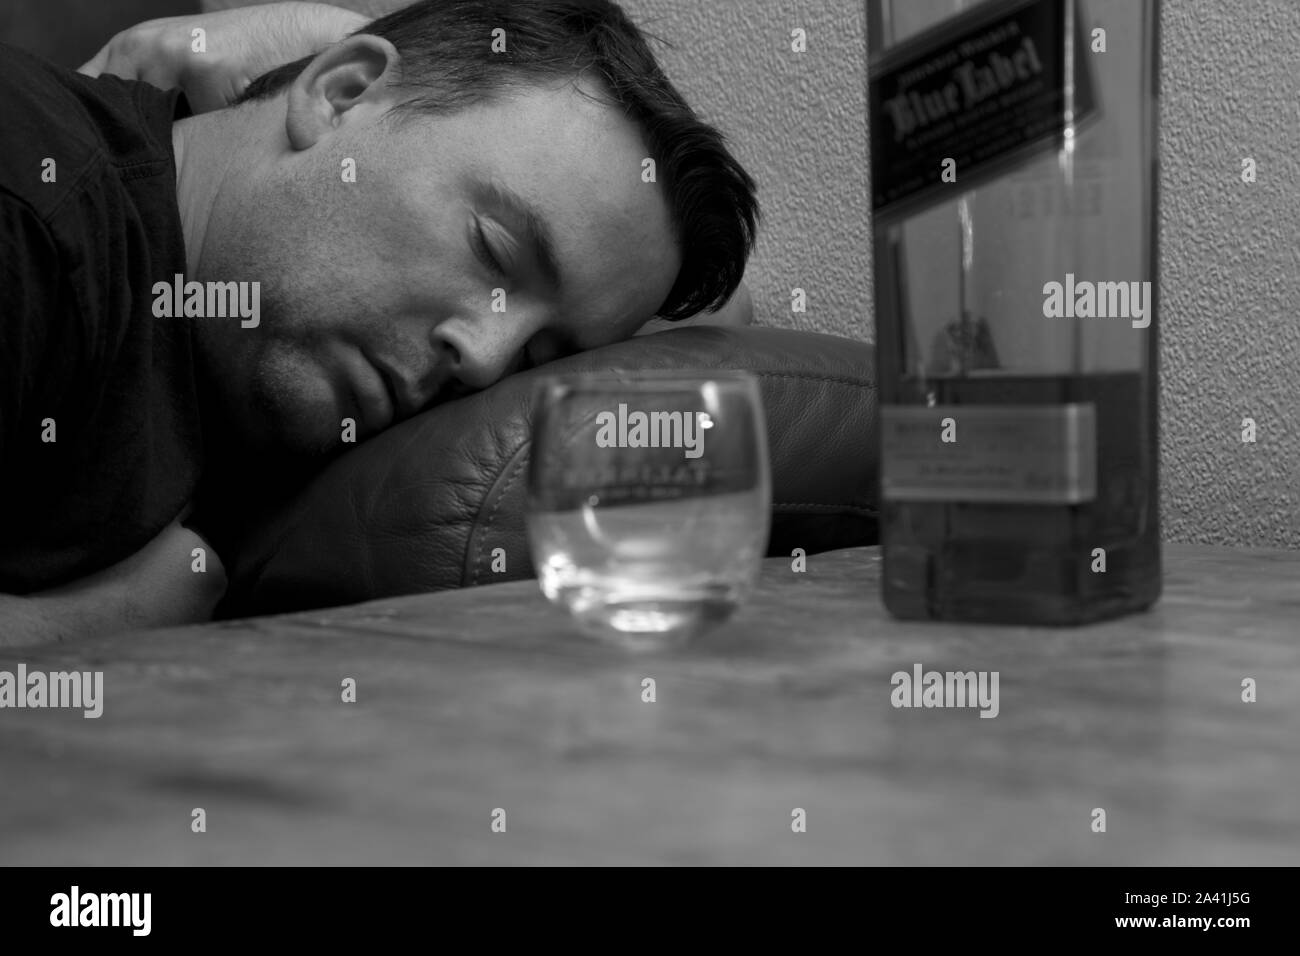 Un homme évanoui sur le canapé de dormir à côté d'une bouteille de whisky Johnnie Walkers étiquette bleue et un verre de whisky vide Banque D'Images